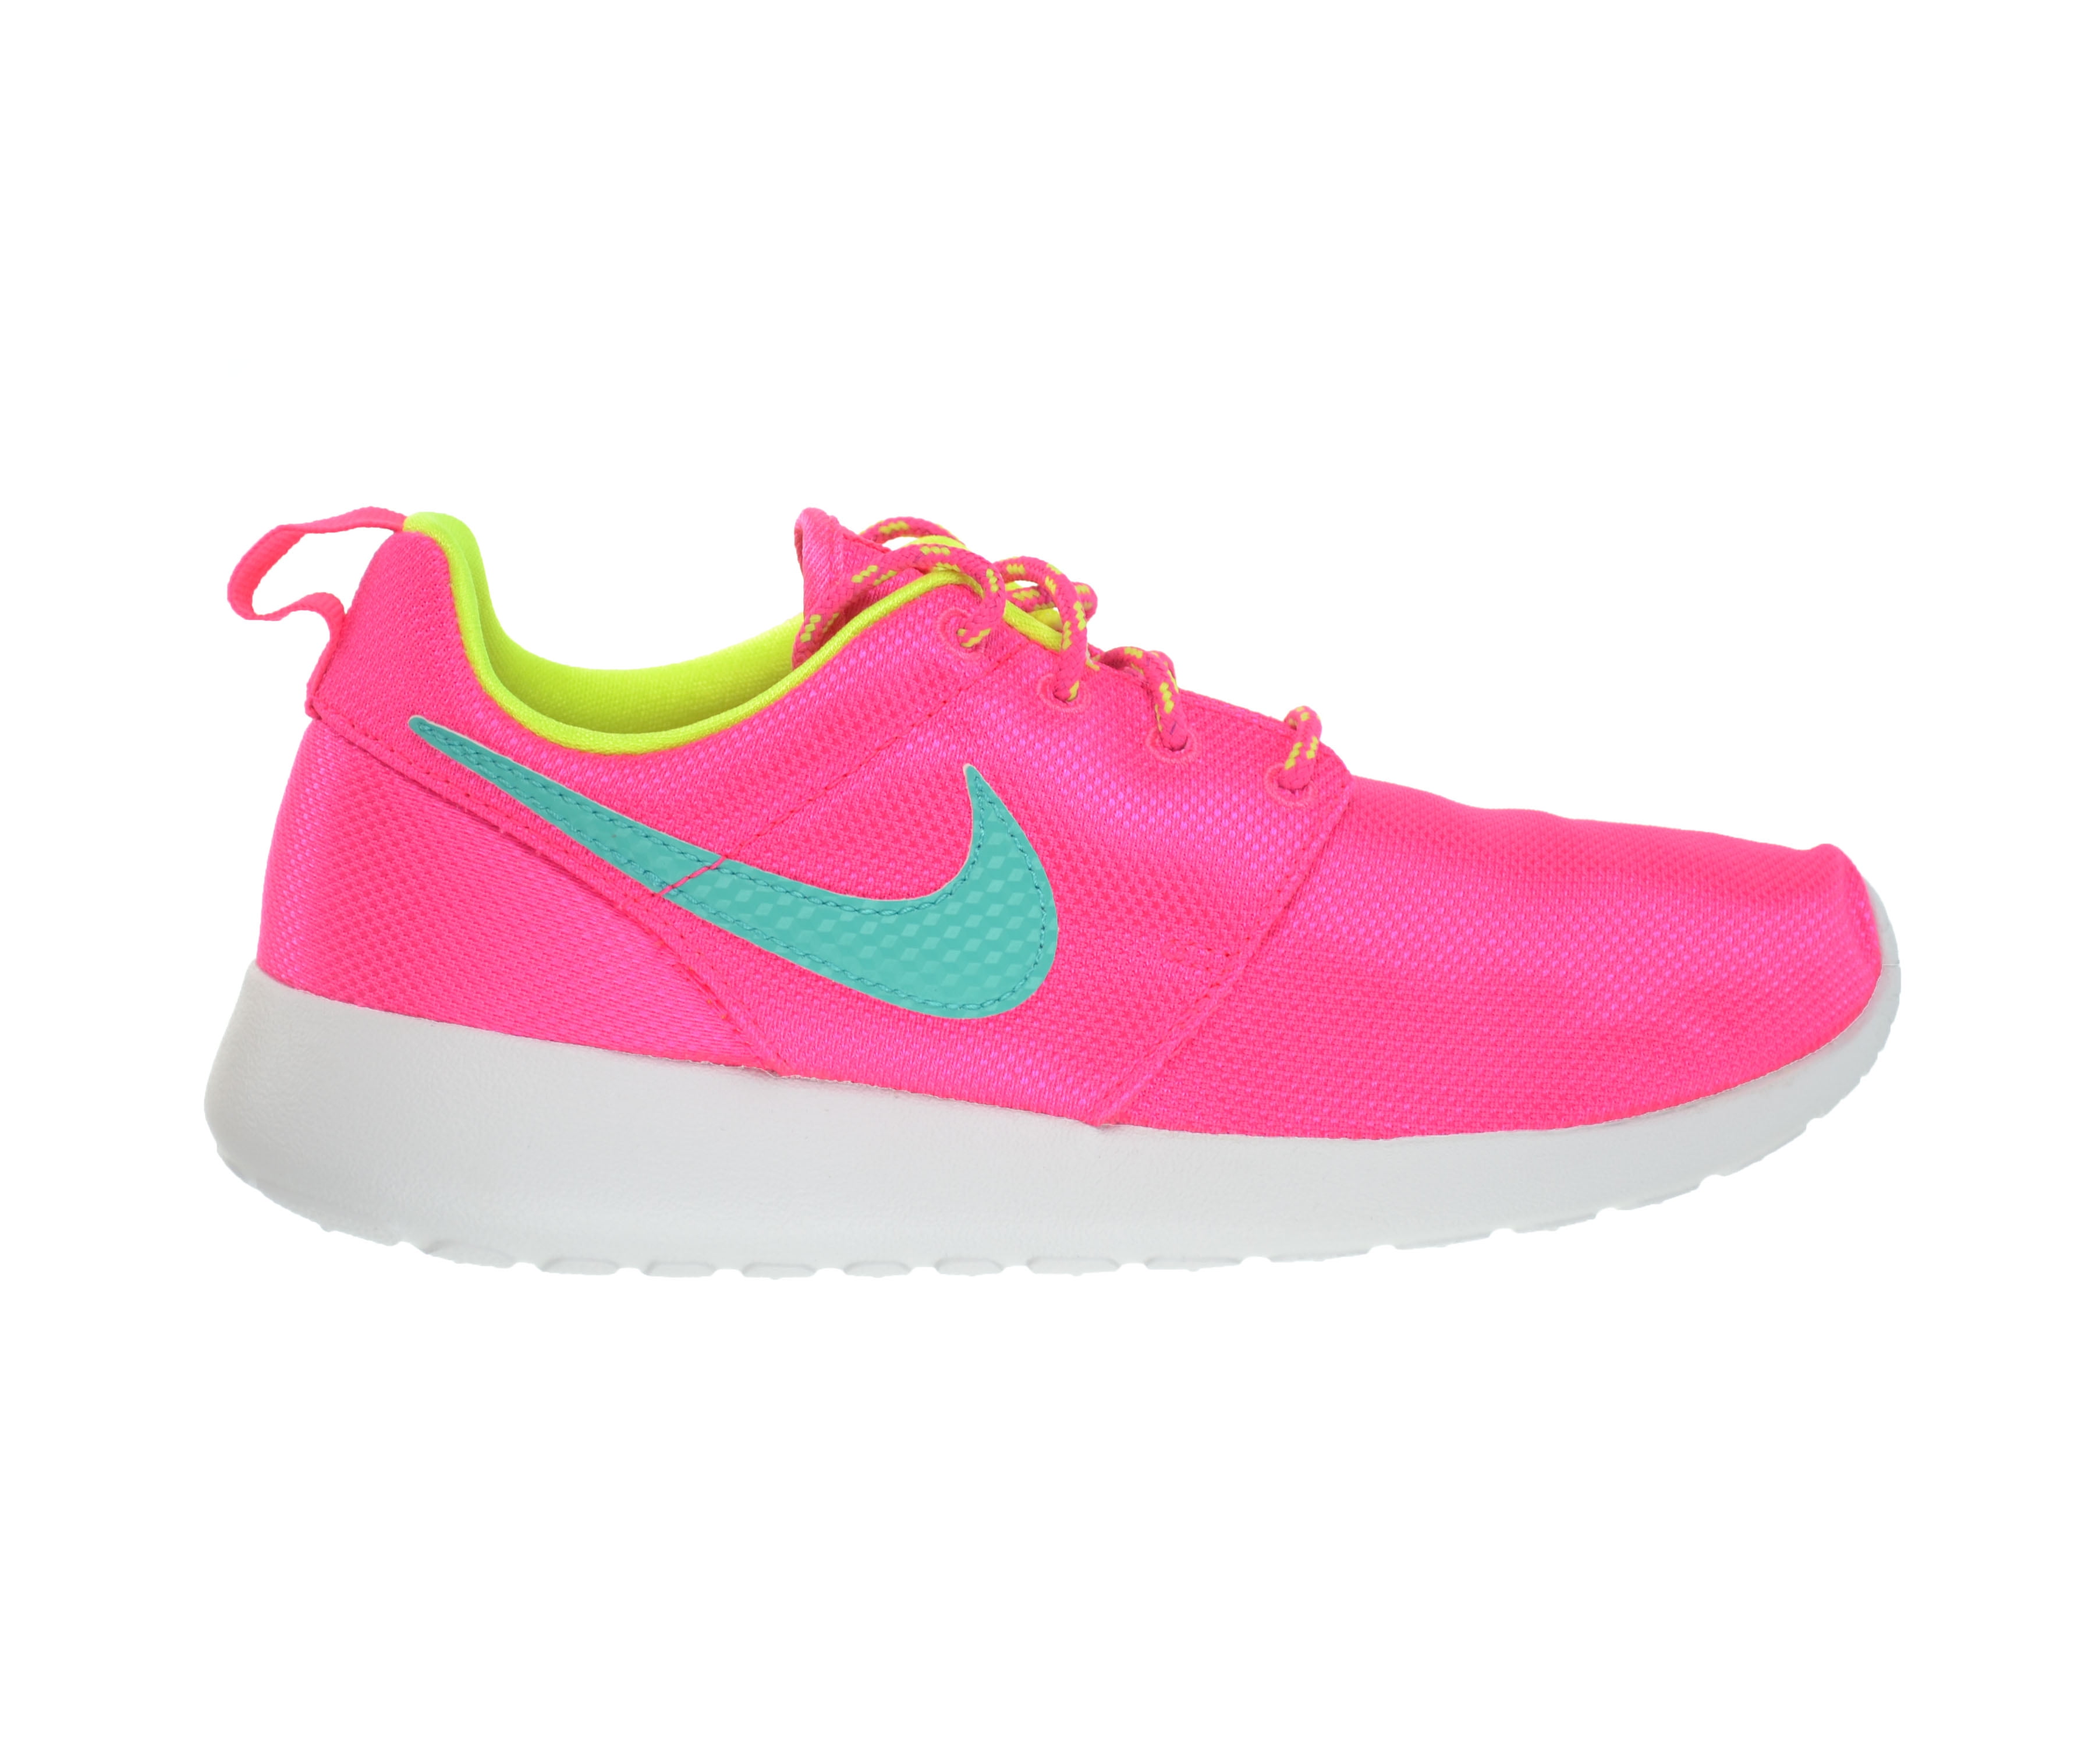 Bisschop buste af hebben Nike Rosherun Big Kids Shoes Hyper Pink/Jade-Volt-White/Blue 599729-605 -  Walmart.com